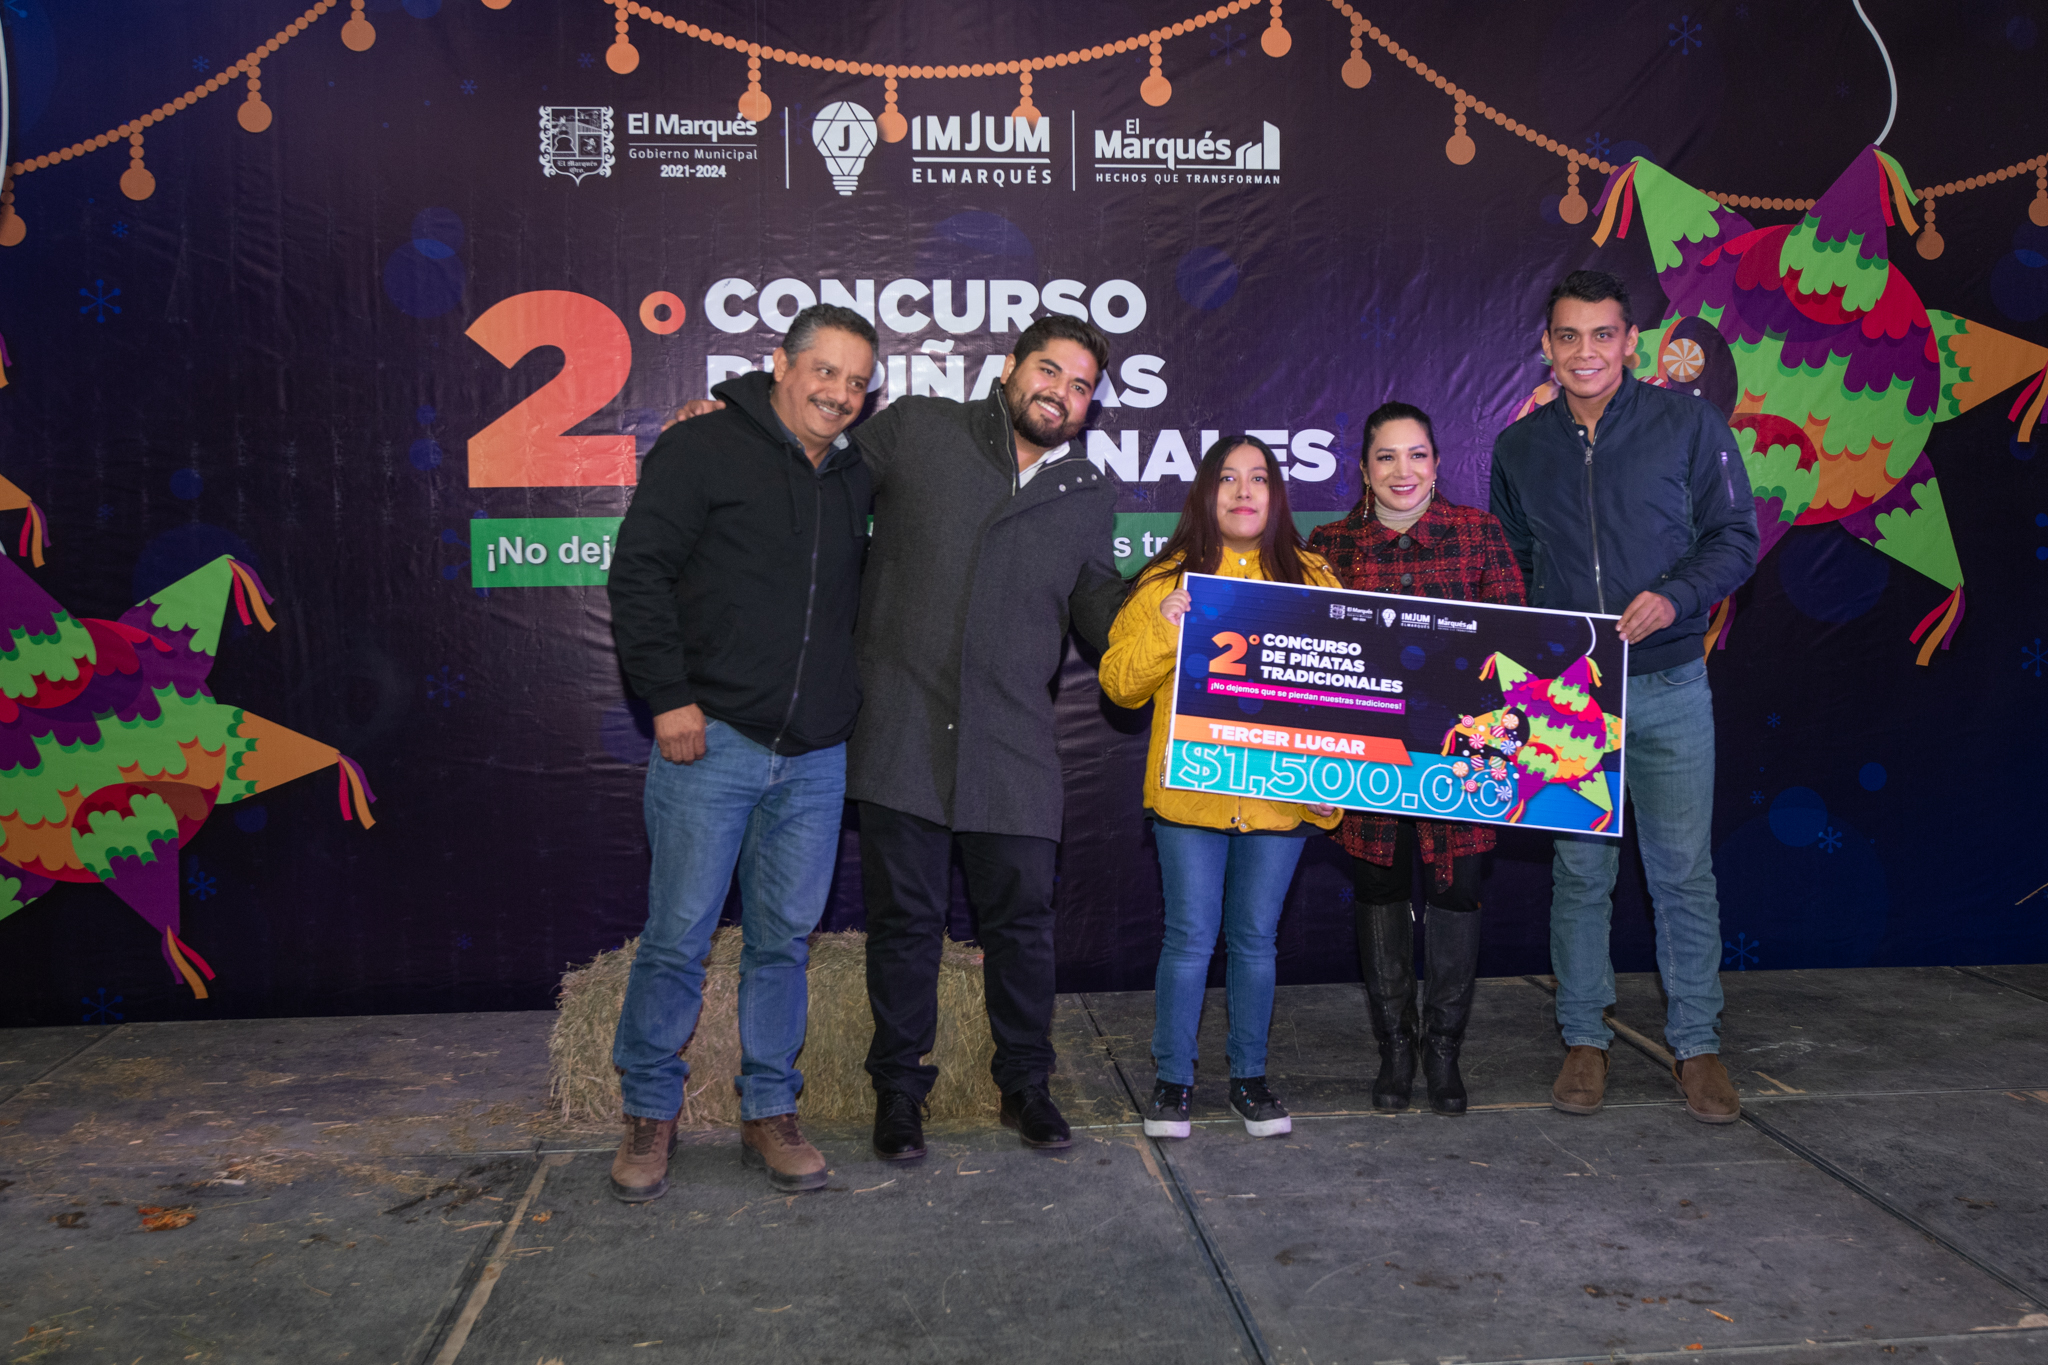 Premia IMJUM de El Marqués, a los tres primeros lugares del 2º Concurso de Piñatas